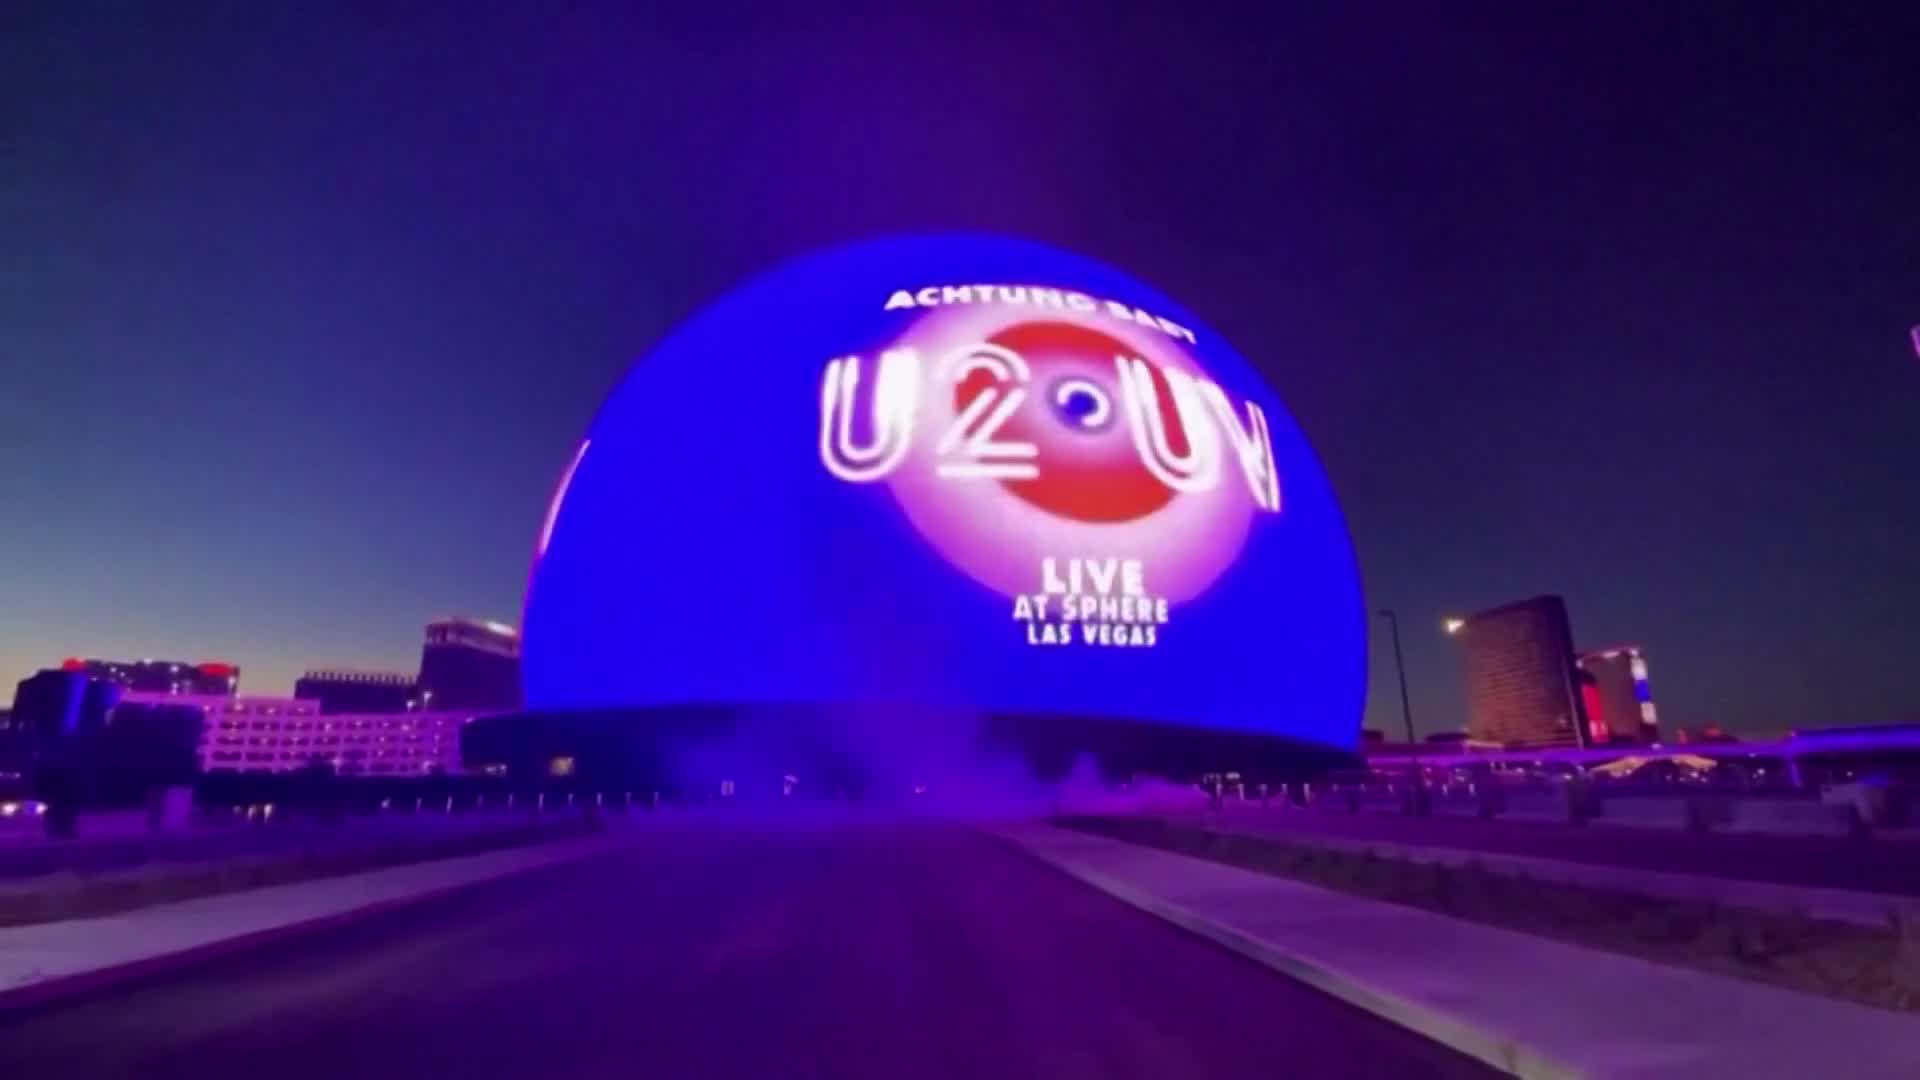 SHOW HISTÓRICO! U2 inaugura THE SPHERE: maior telão LED do mundo e